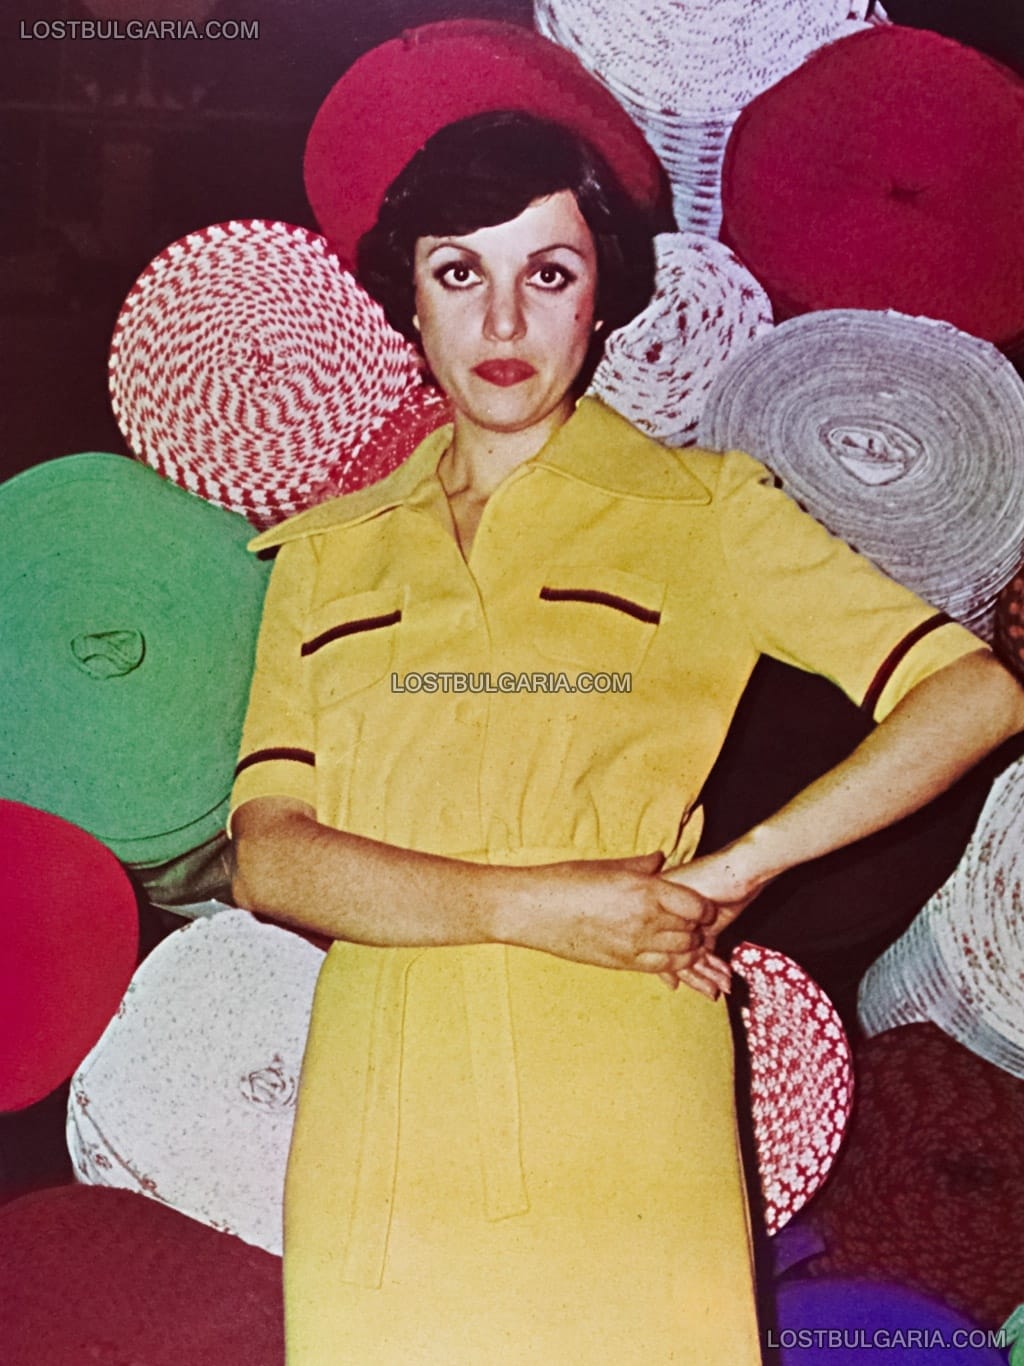 Рекламна фотография на текстилен комбинат "Саня", Плевен 70-те години на ХХ век